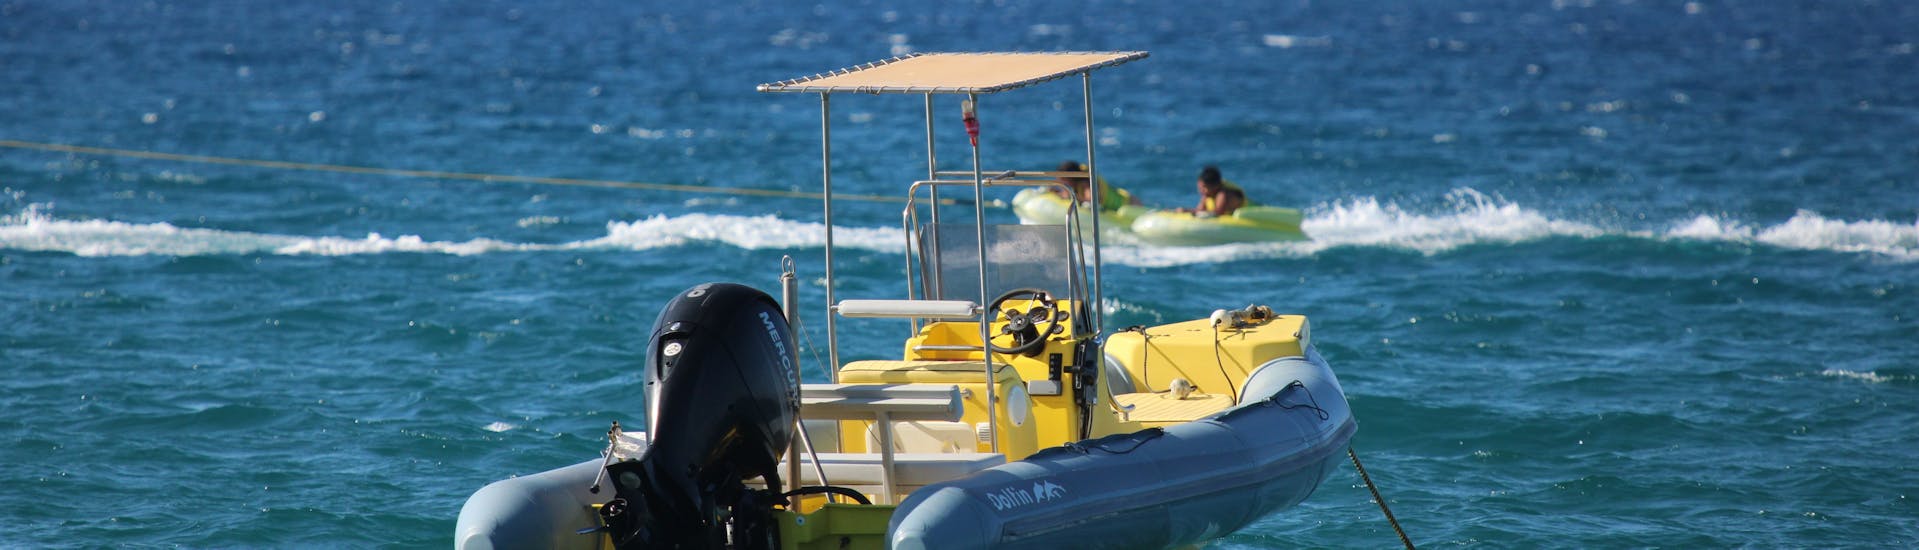 Paseo en barco privado de Iraklion a Playa Ammoudara  & baño en el mar.